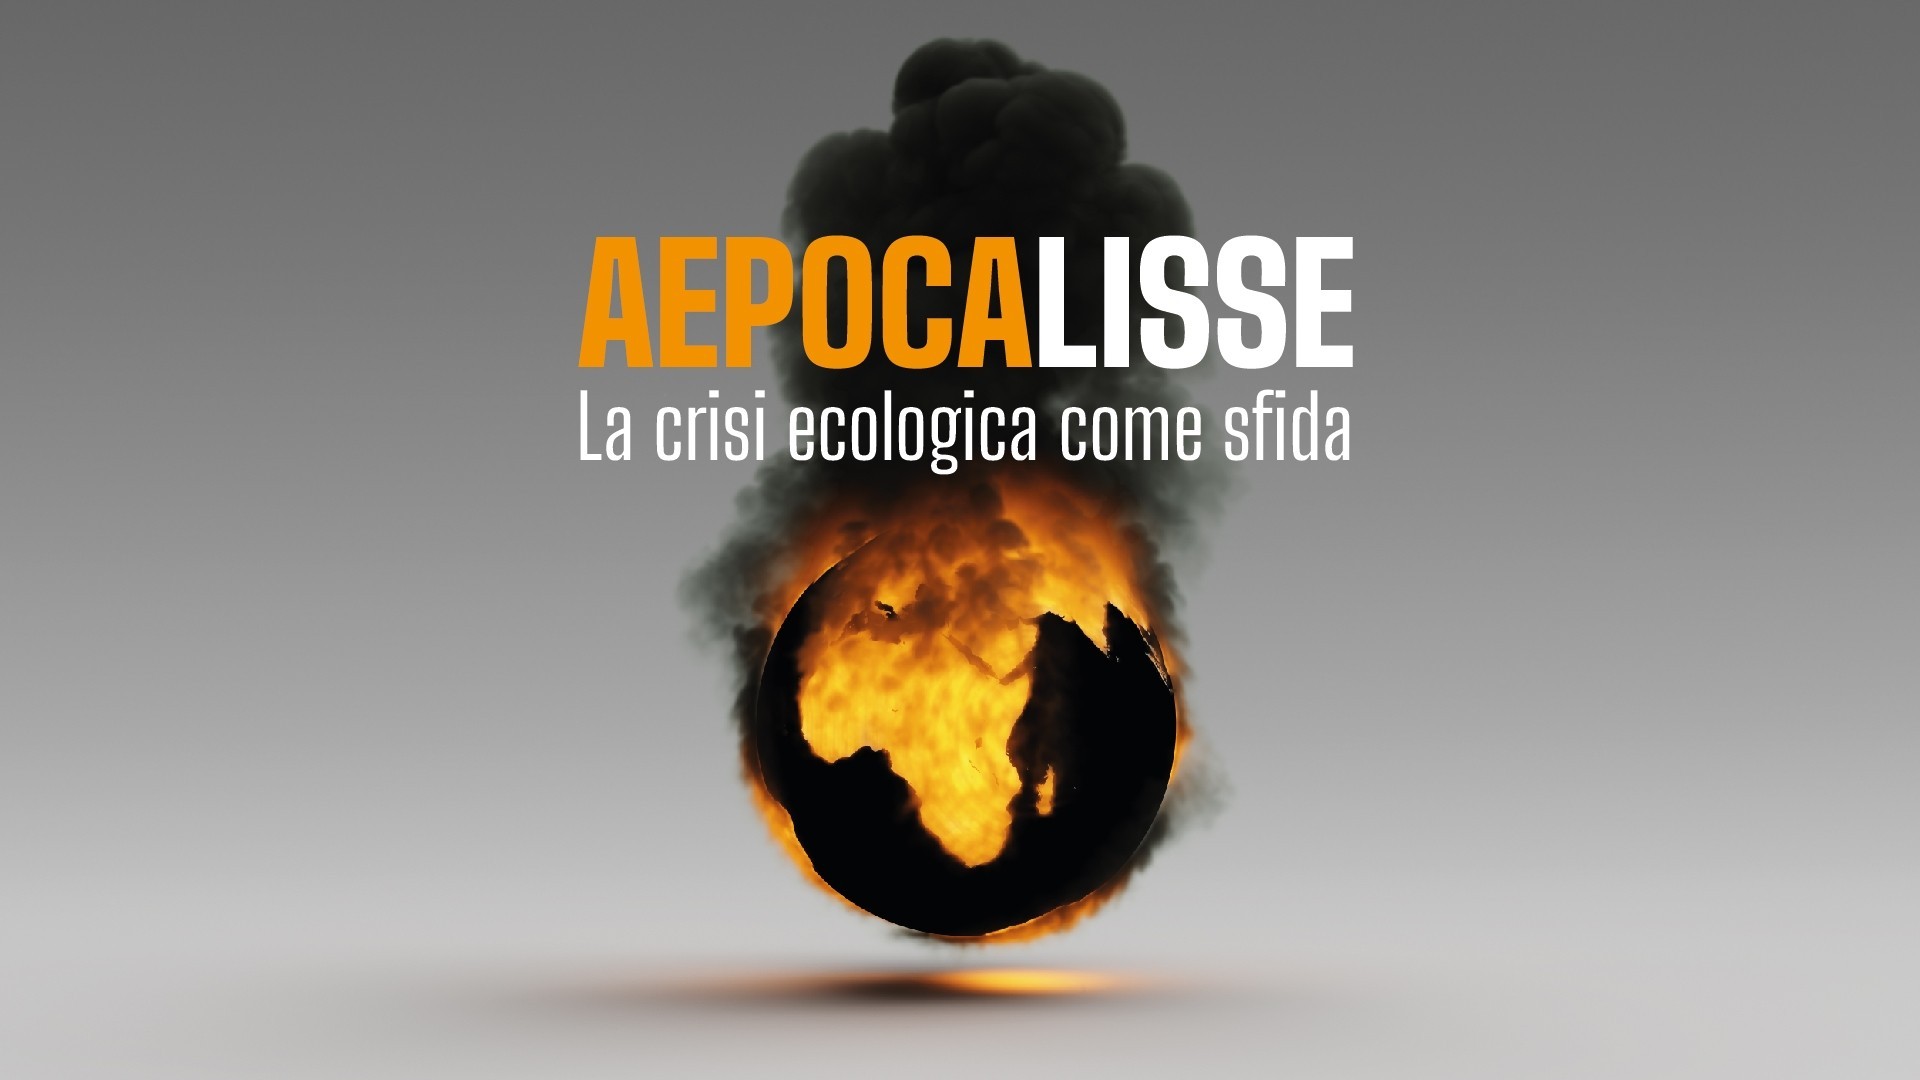 Aepocalisse. La crisi ecologica come sfida